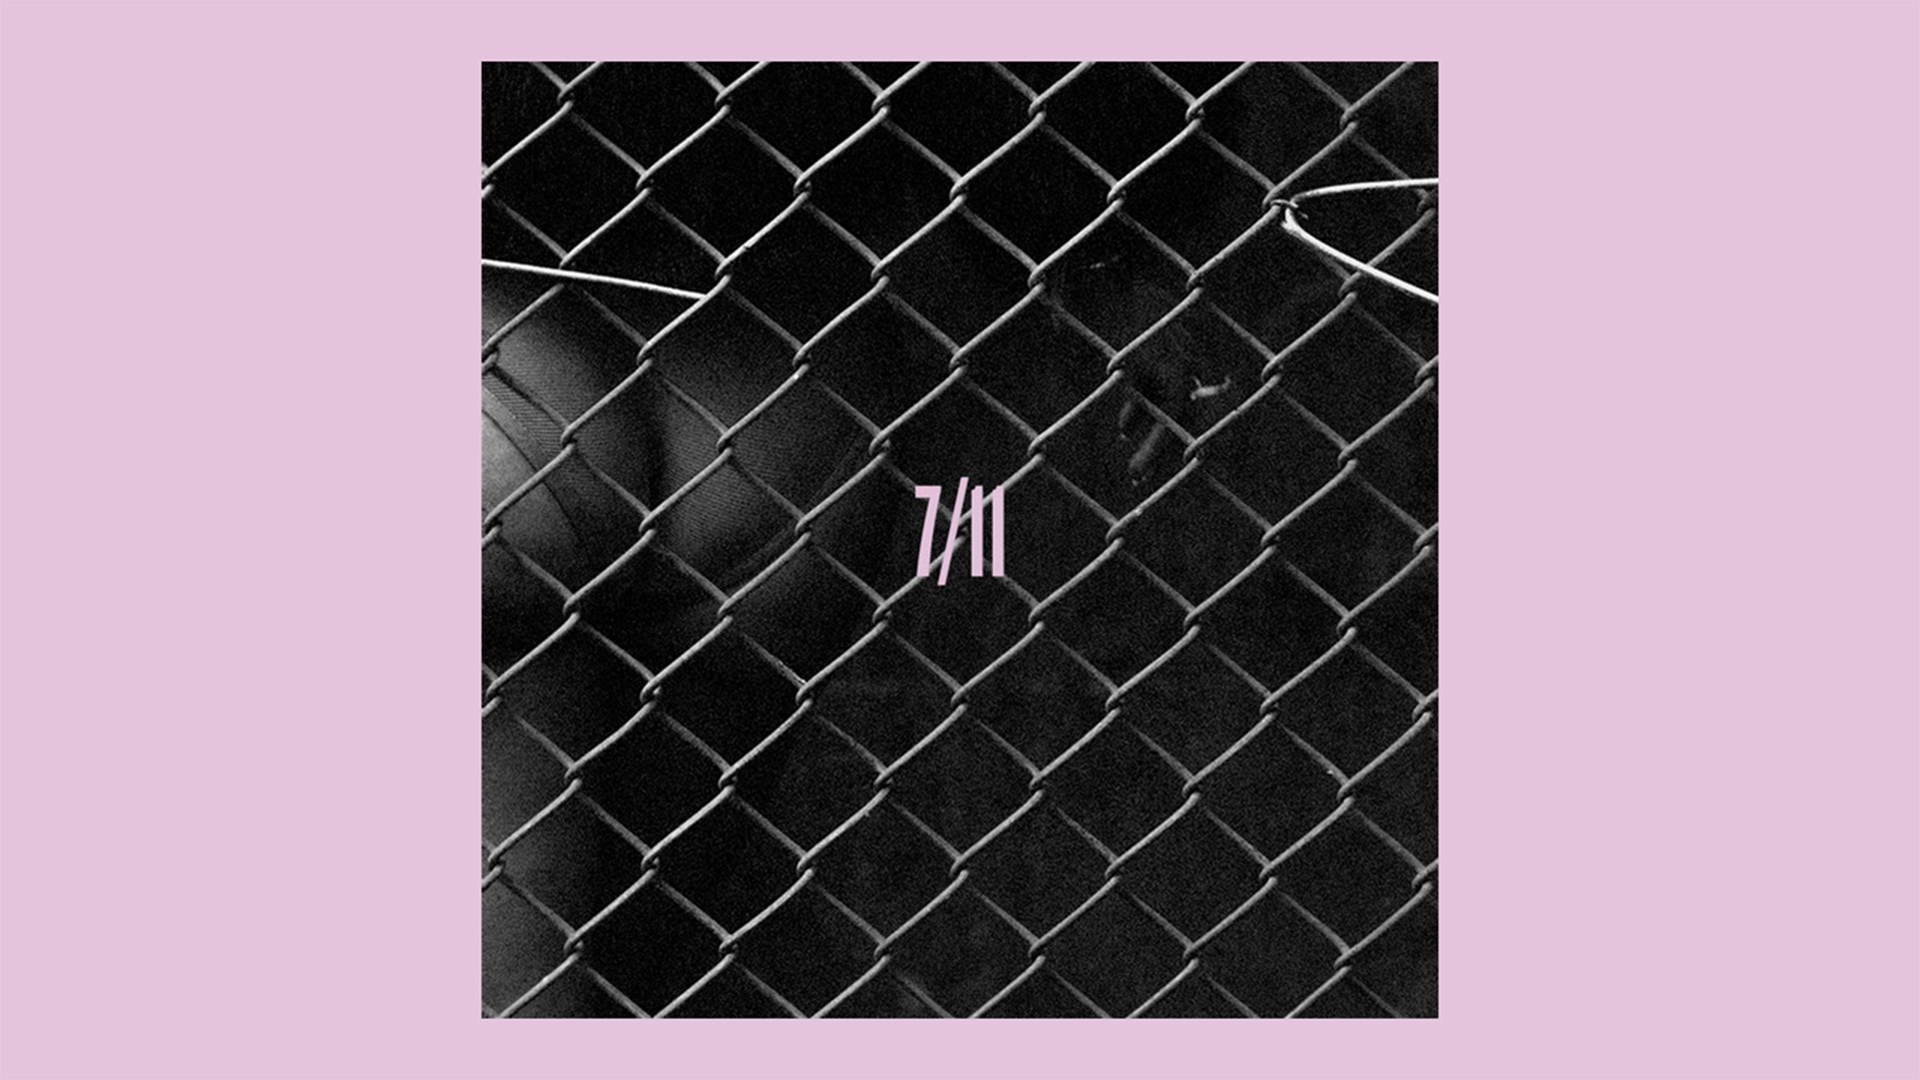 7/11 by Beyoncé single cover